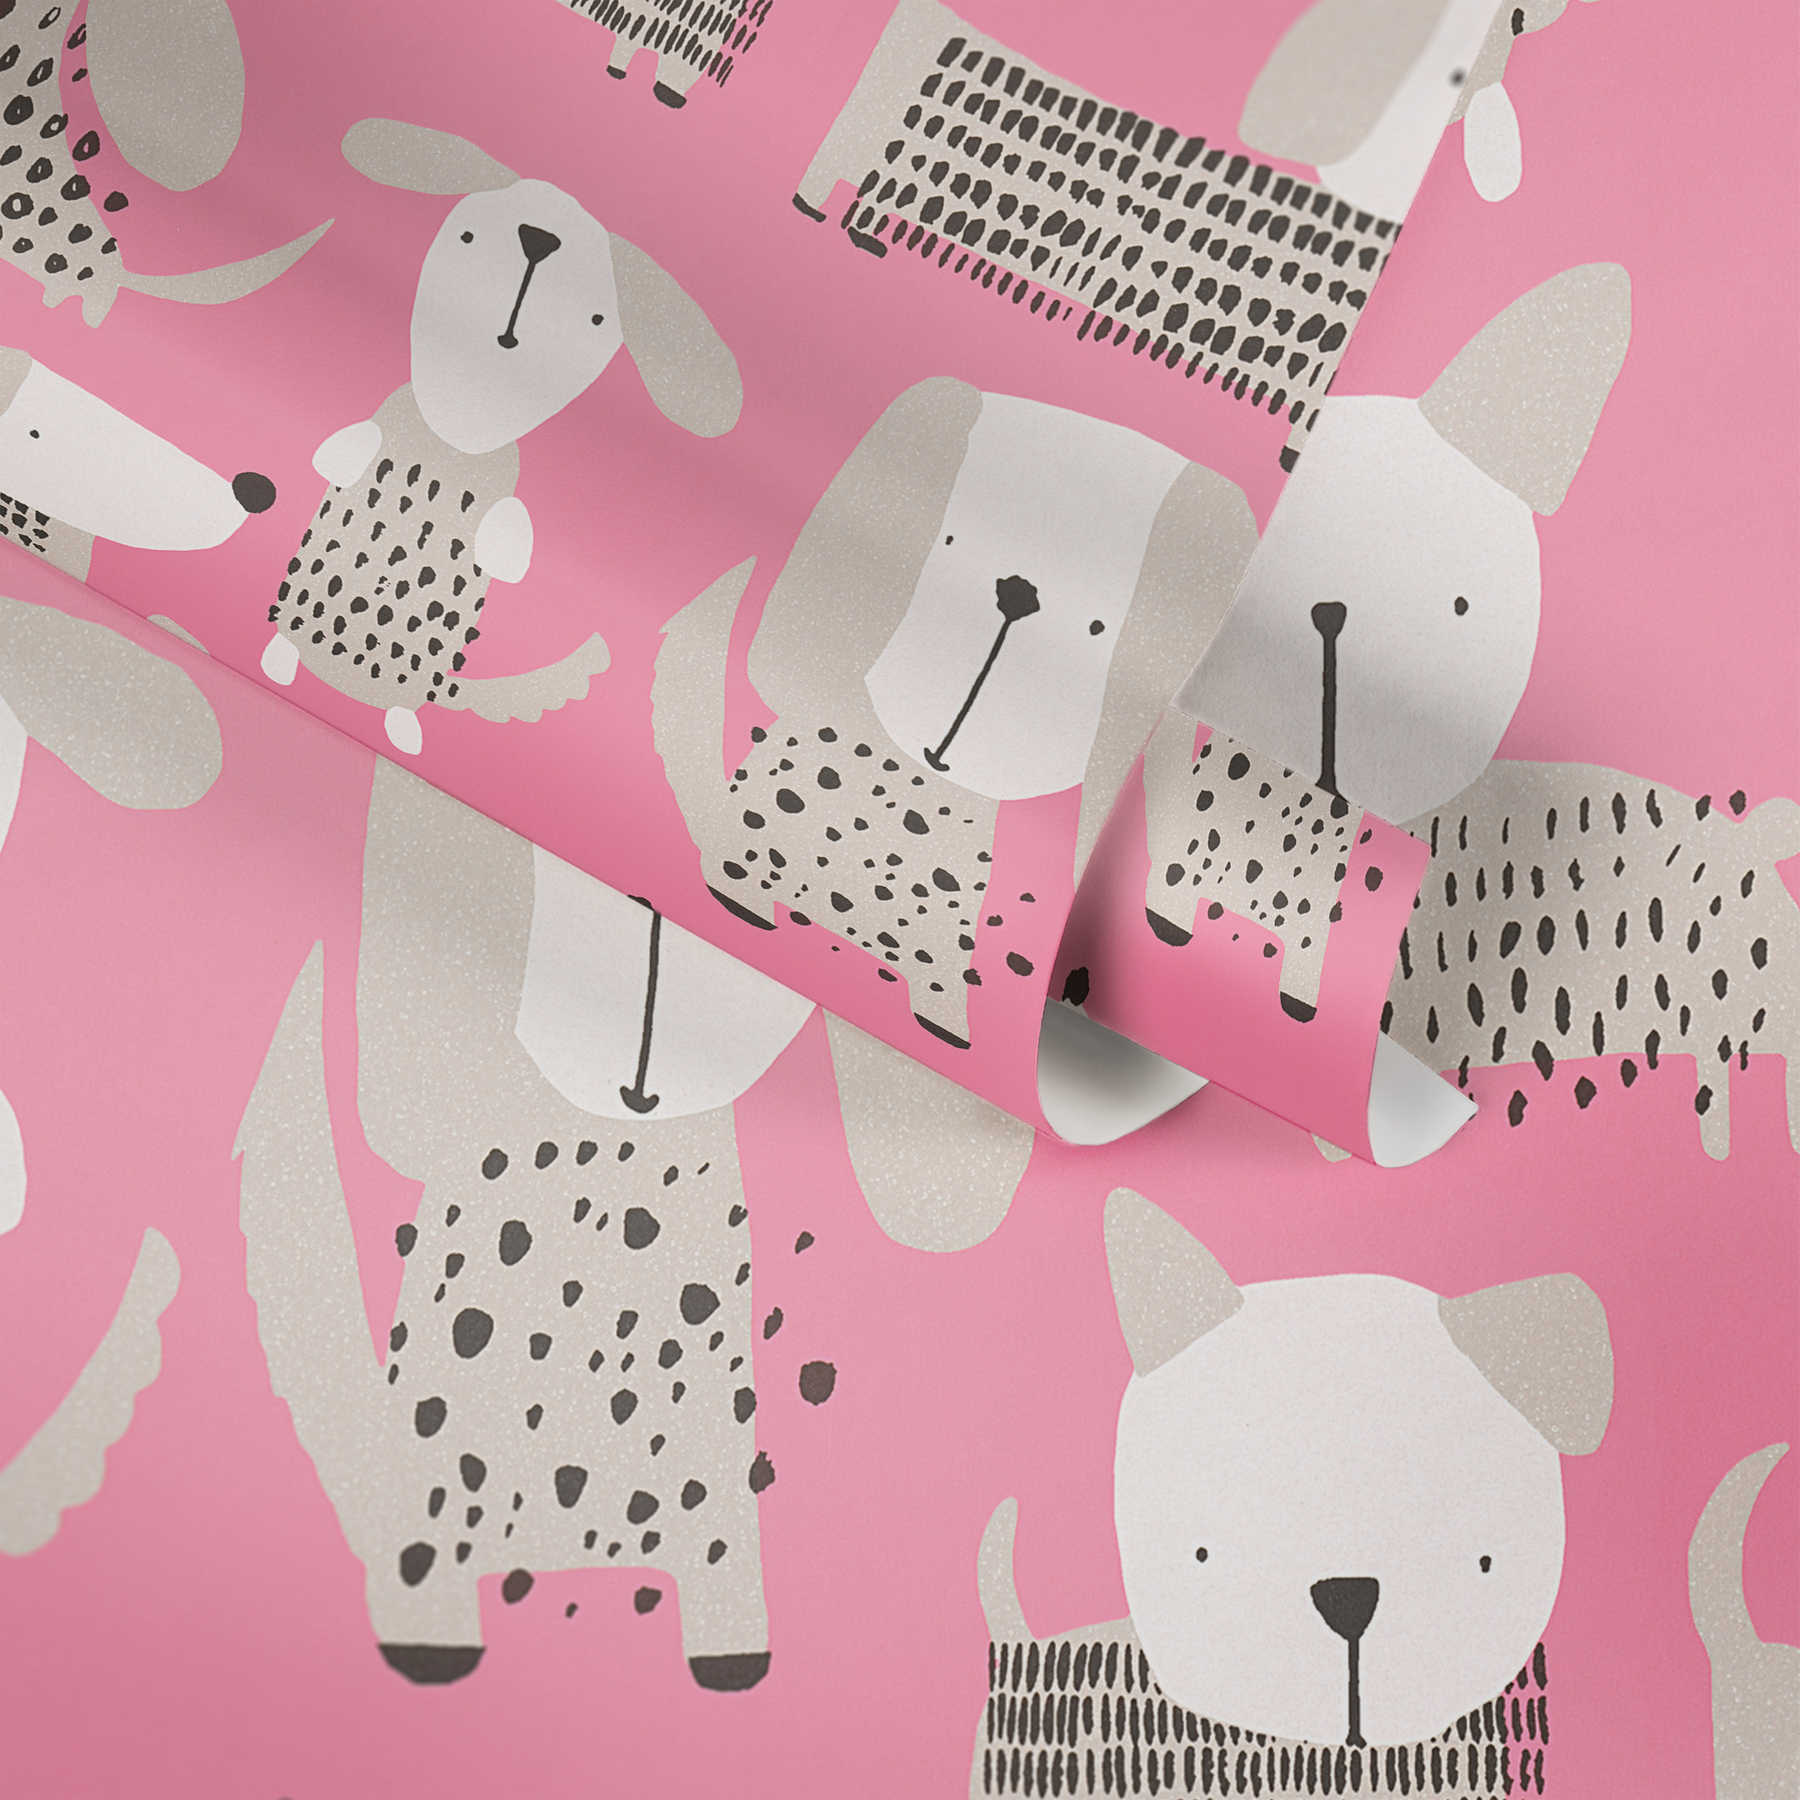             Papier peint chien style bande dessinée pour chambre d'enfant - rose, blanc
        